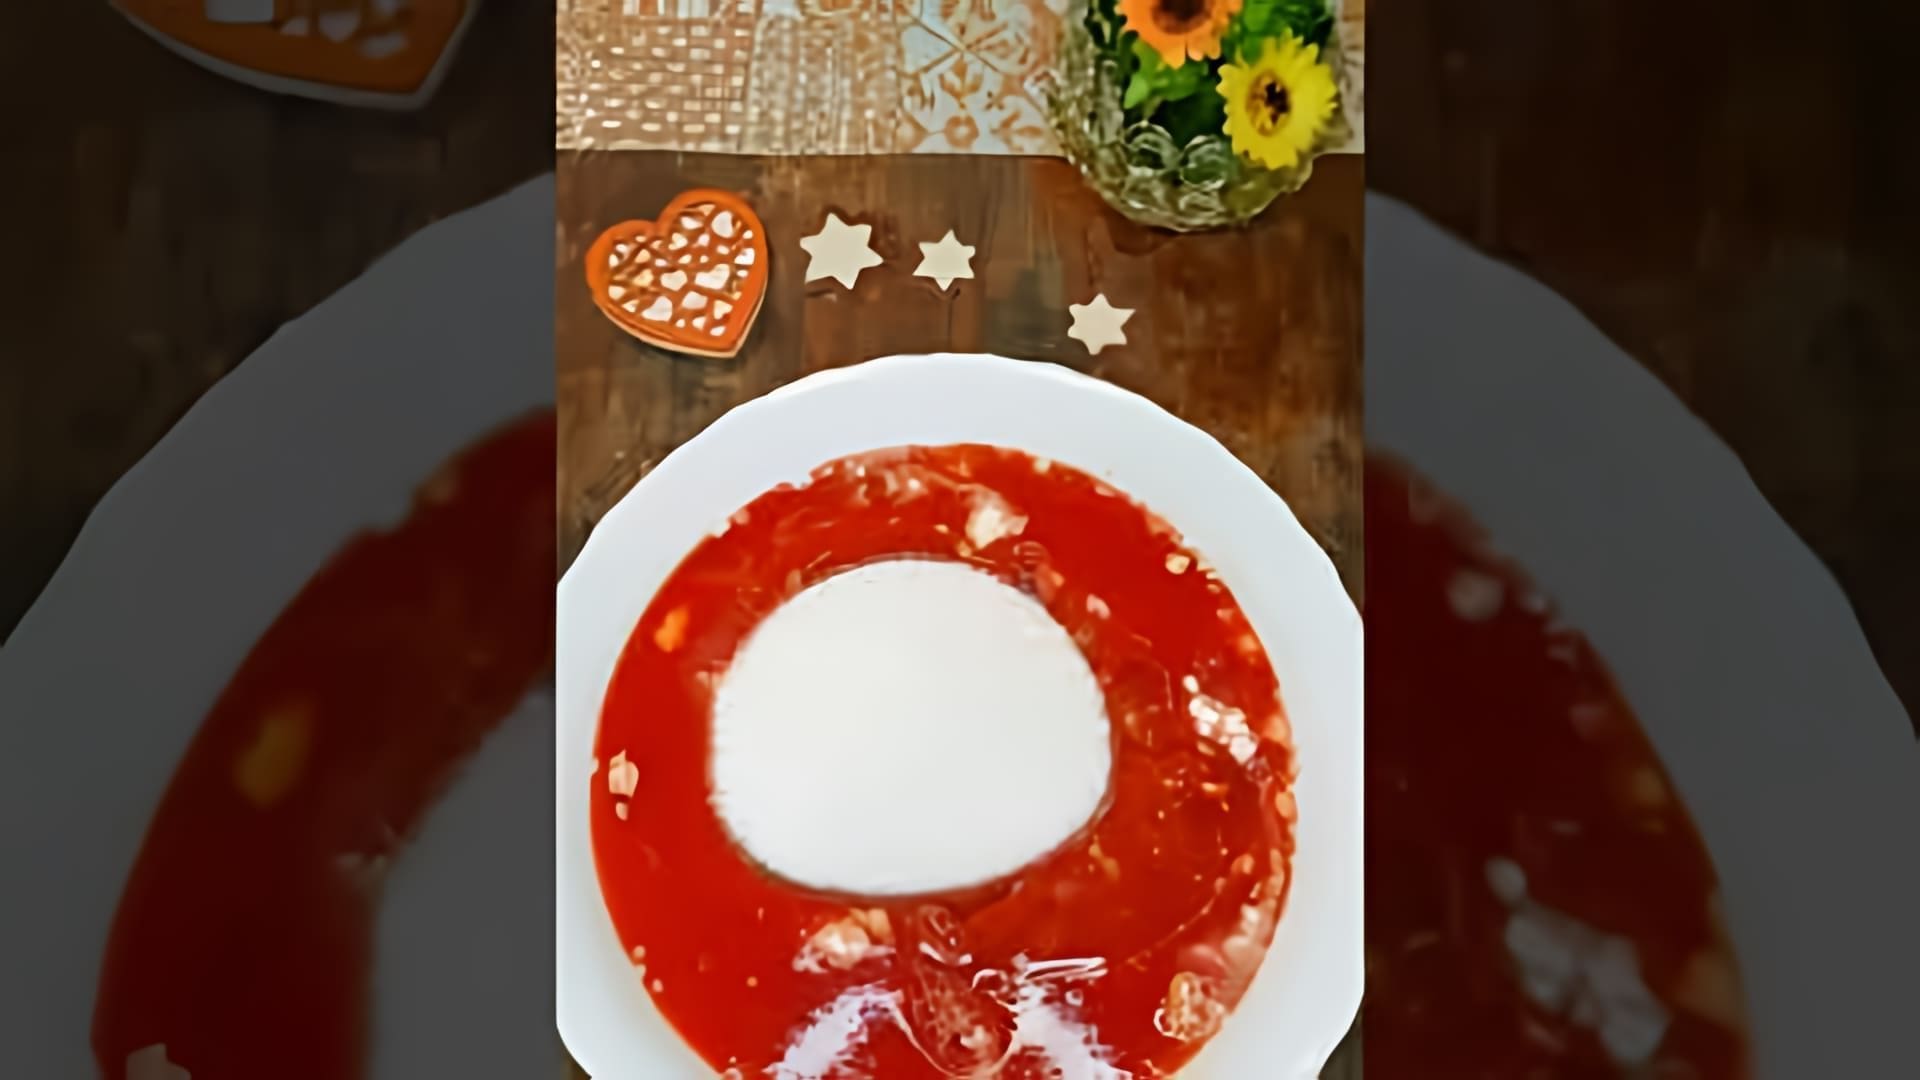 В этом видео демонстрируется рецепт приготовления вкусного томатного пирога